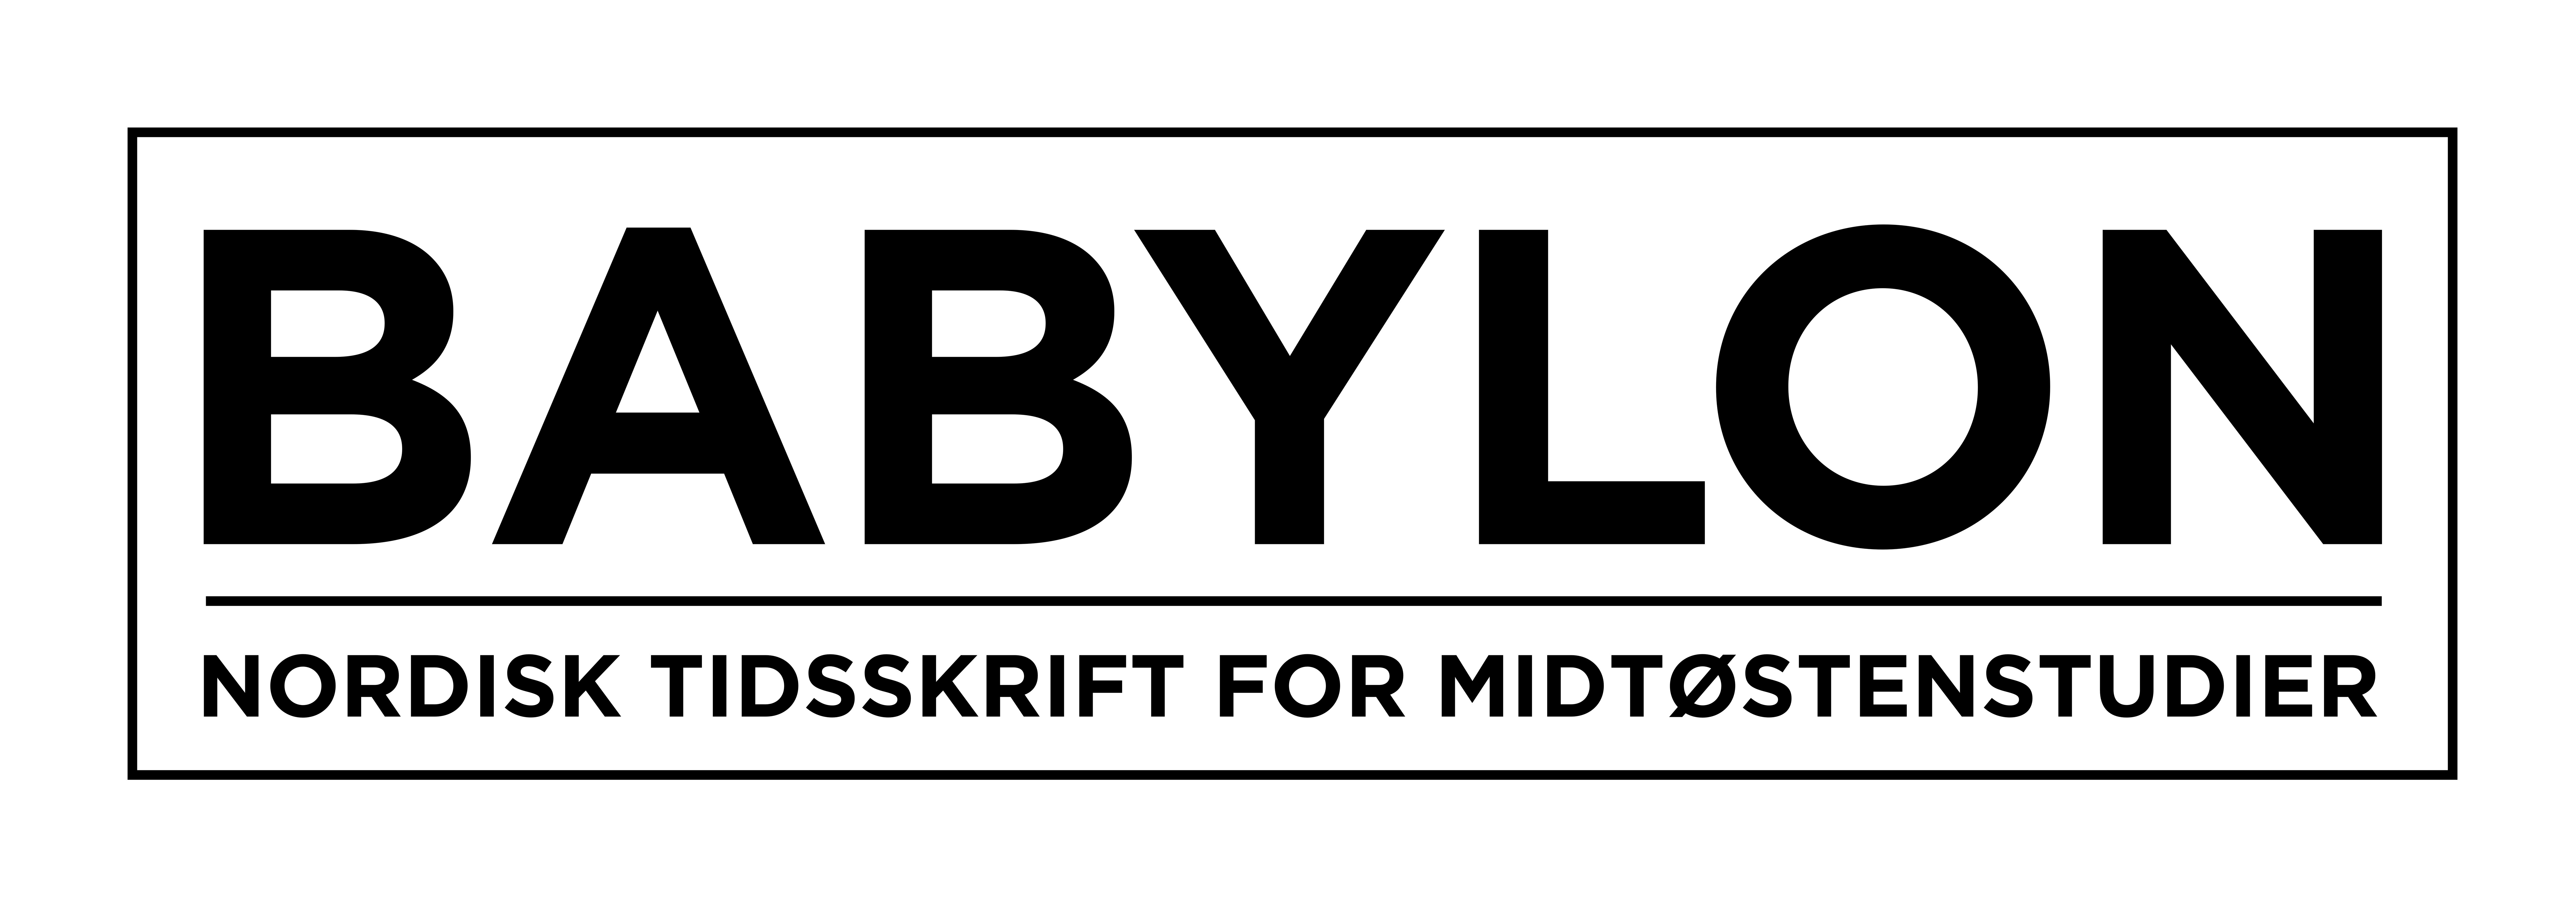 Babylon - Nordisk tidsskrift for midtøsten logo